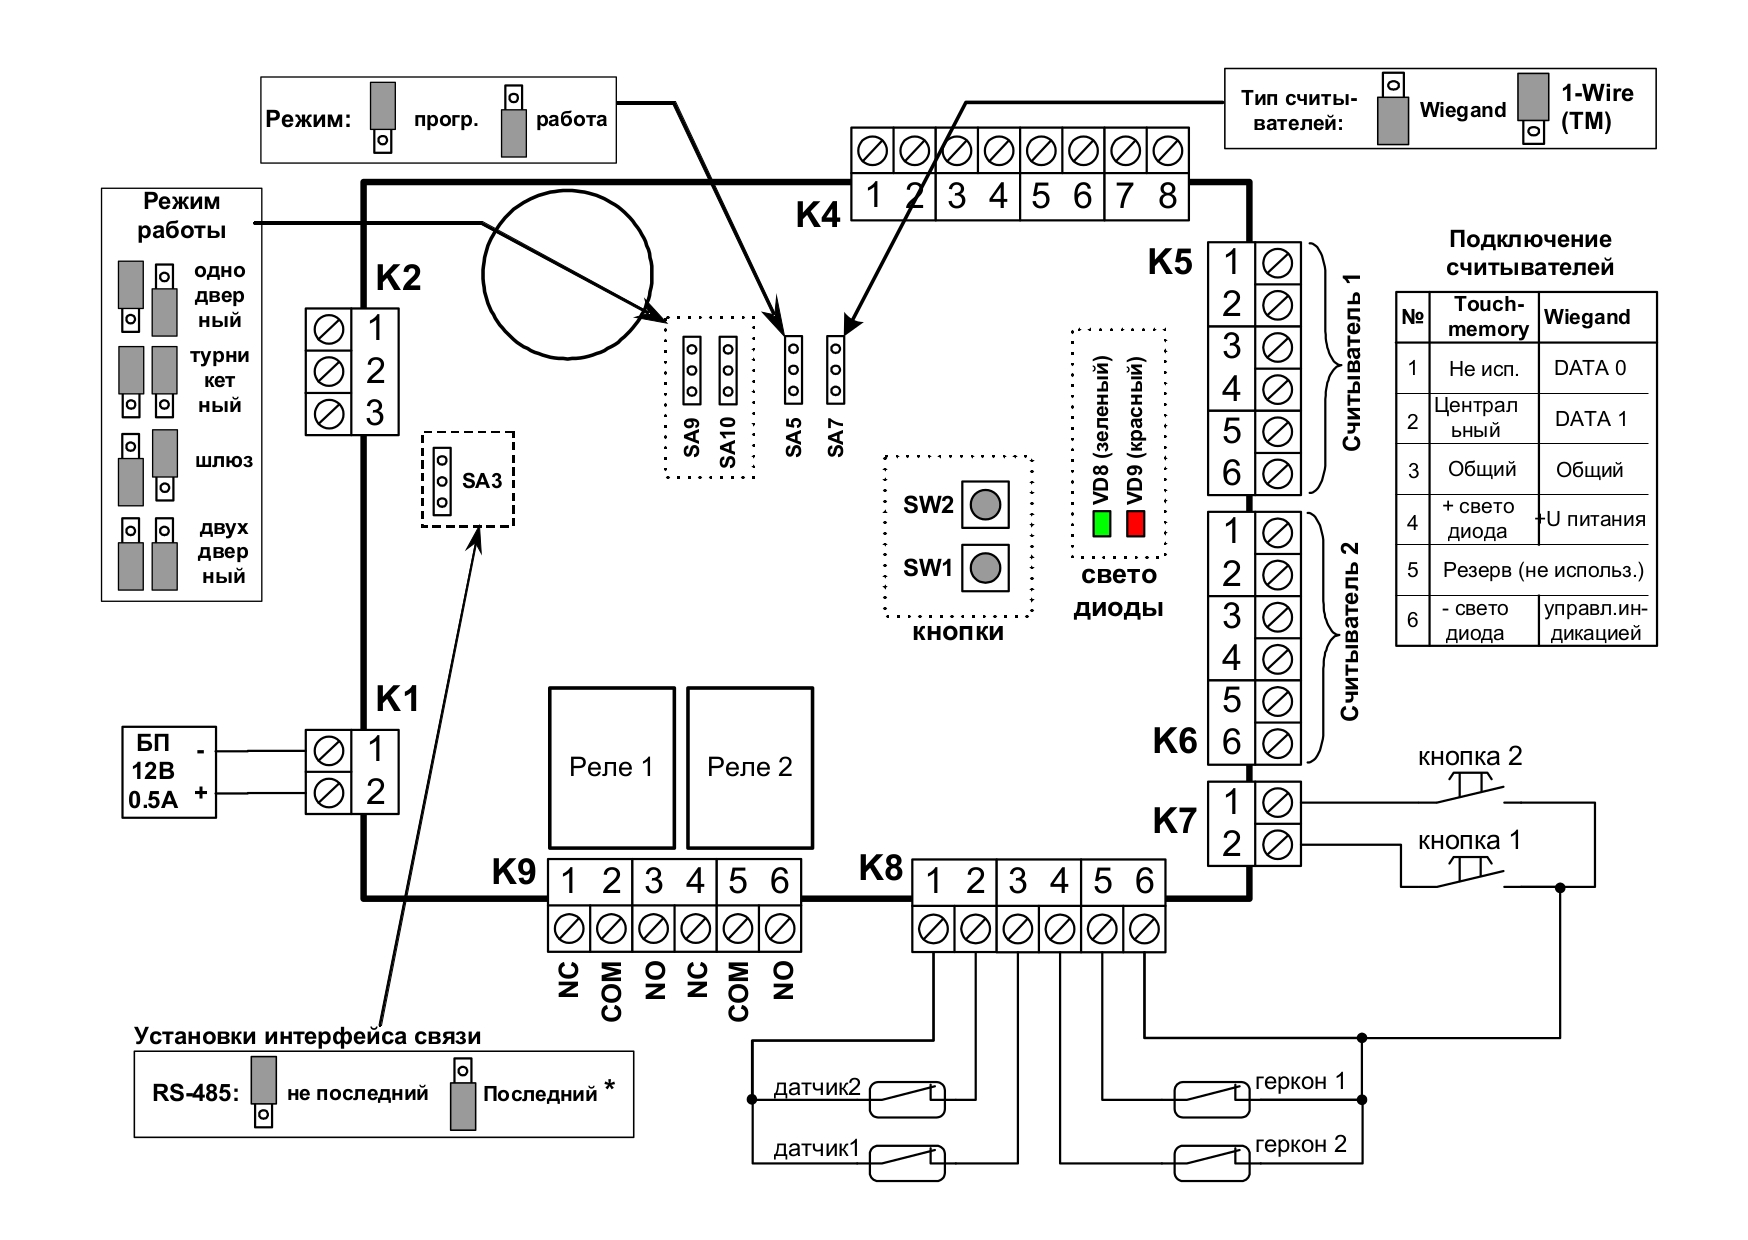 Универсальный контроллер, память на 16 тыс.ключей, 8 тыс.событий и 7 расписаний. RS-485. 2 входа считывателей Wiegand 26 или 48-автомат (опционально:1-Wire (TM), ABA-2), 4 тревожных входа. 2 реле (30В DC/6A), в корпусе с 2-канальным ББП. Место под 2 аккум.(7Ач + 1.2Ач)